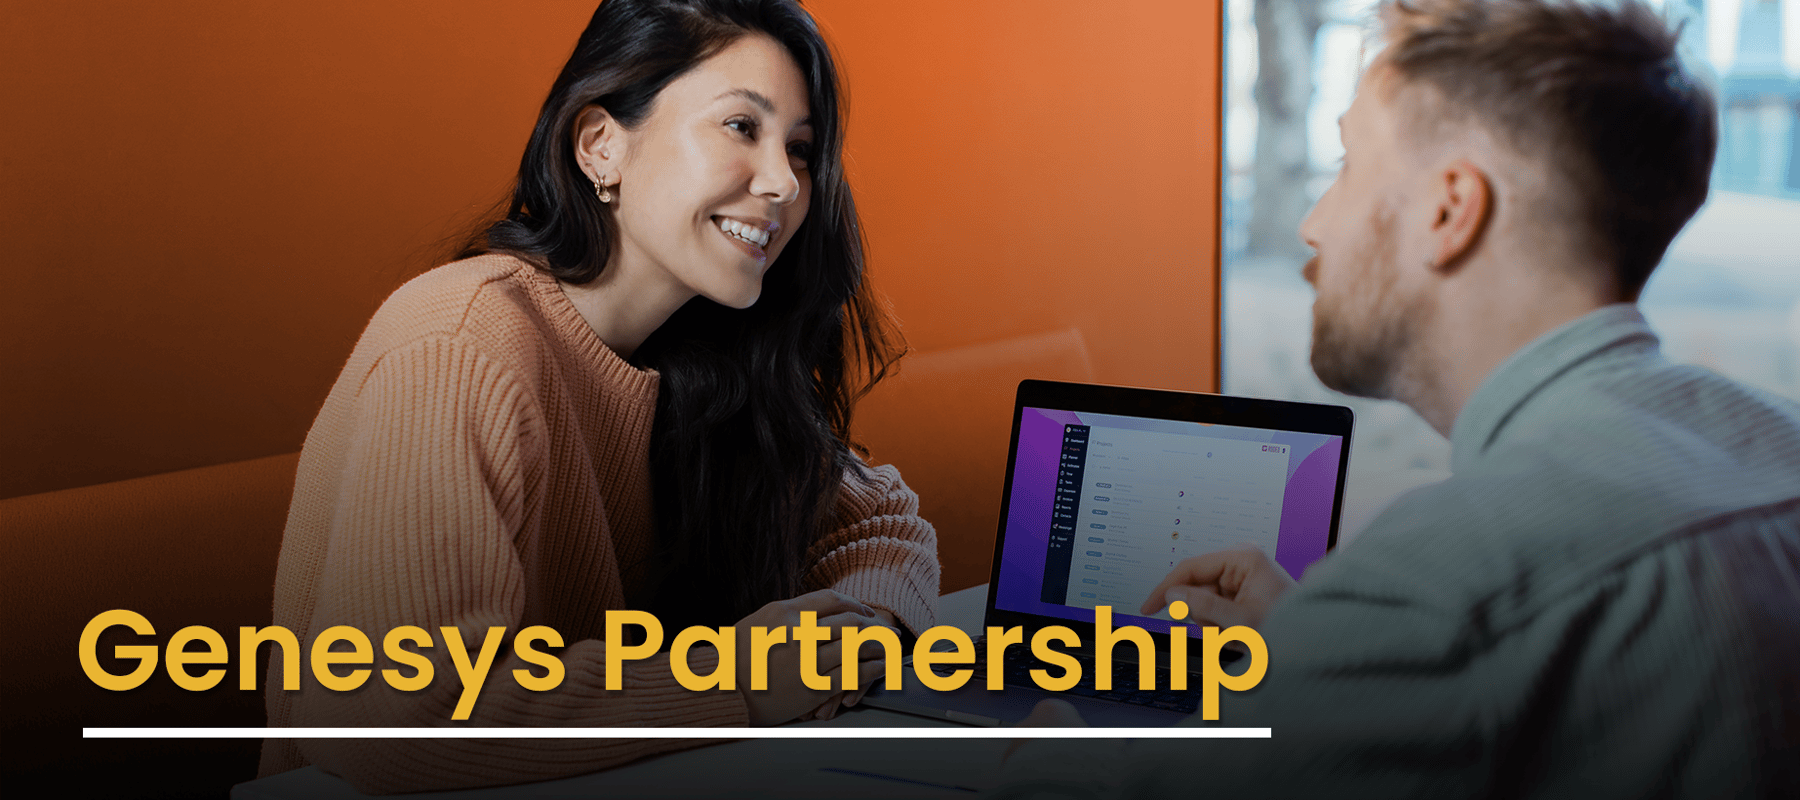 Genesys Partnership